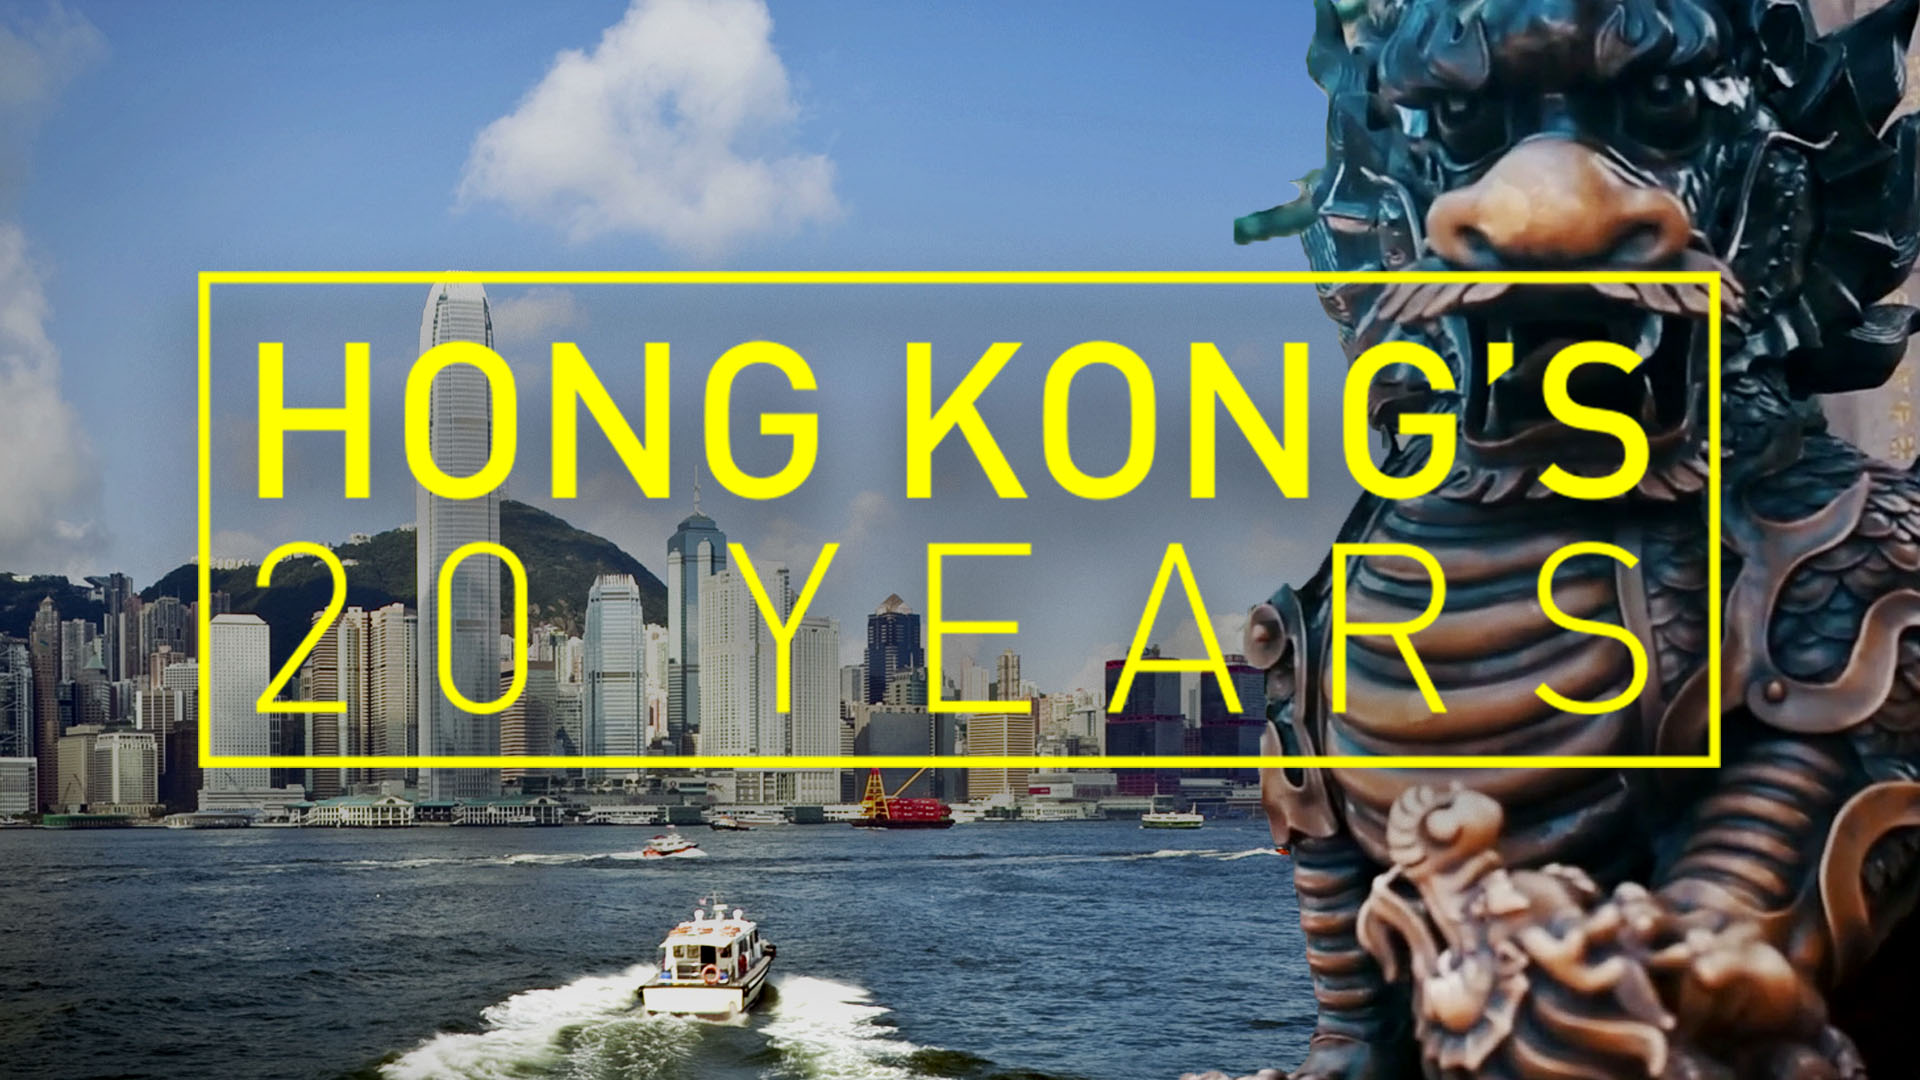 Hong Kong’s 20 years